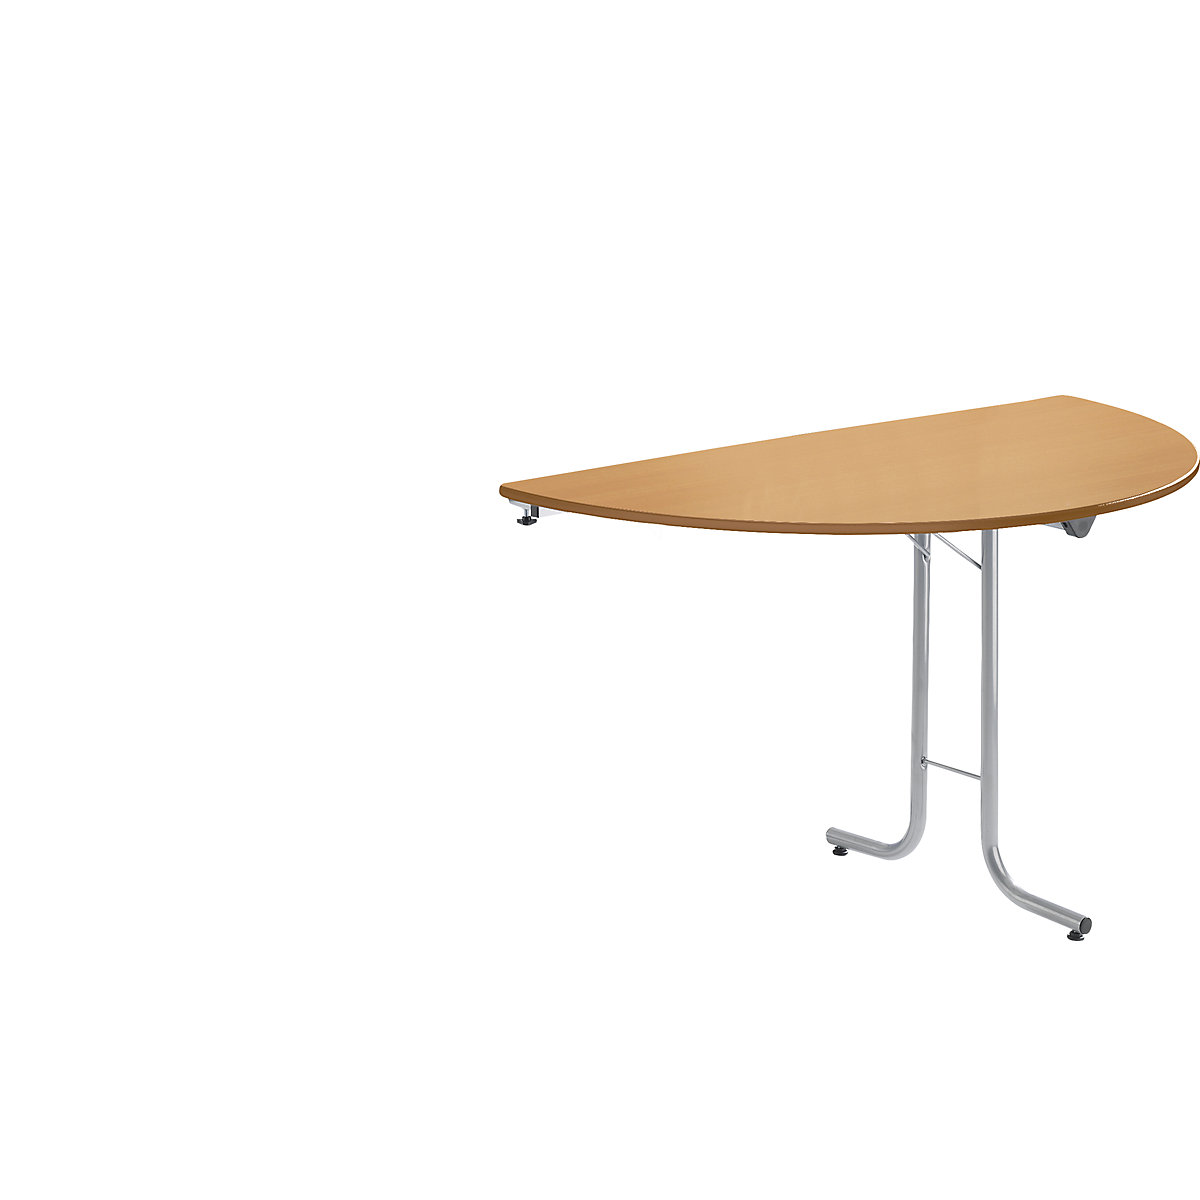 Prídavný stôl ku sklápaciemu stolu, tvar dosky polkruh, 1400 x 700 mm, podstavec strieborná, doska vzor buk-3